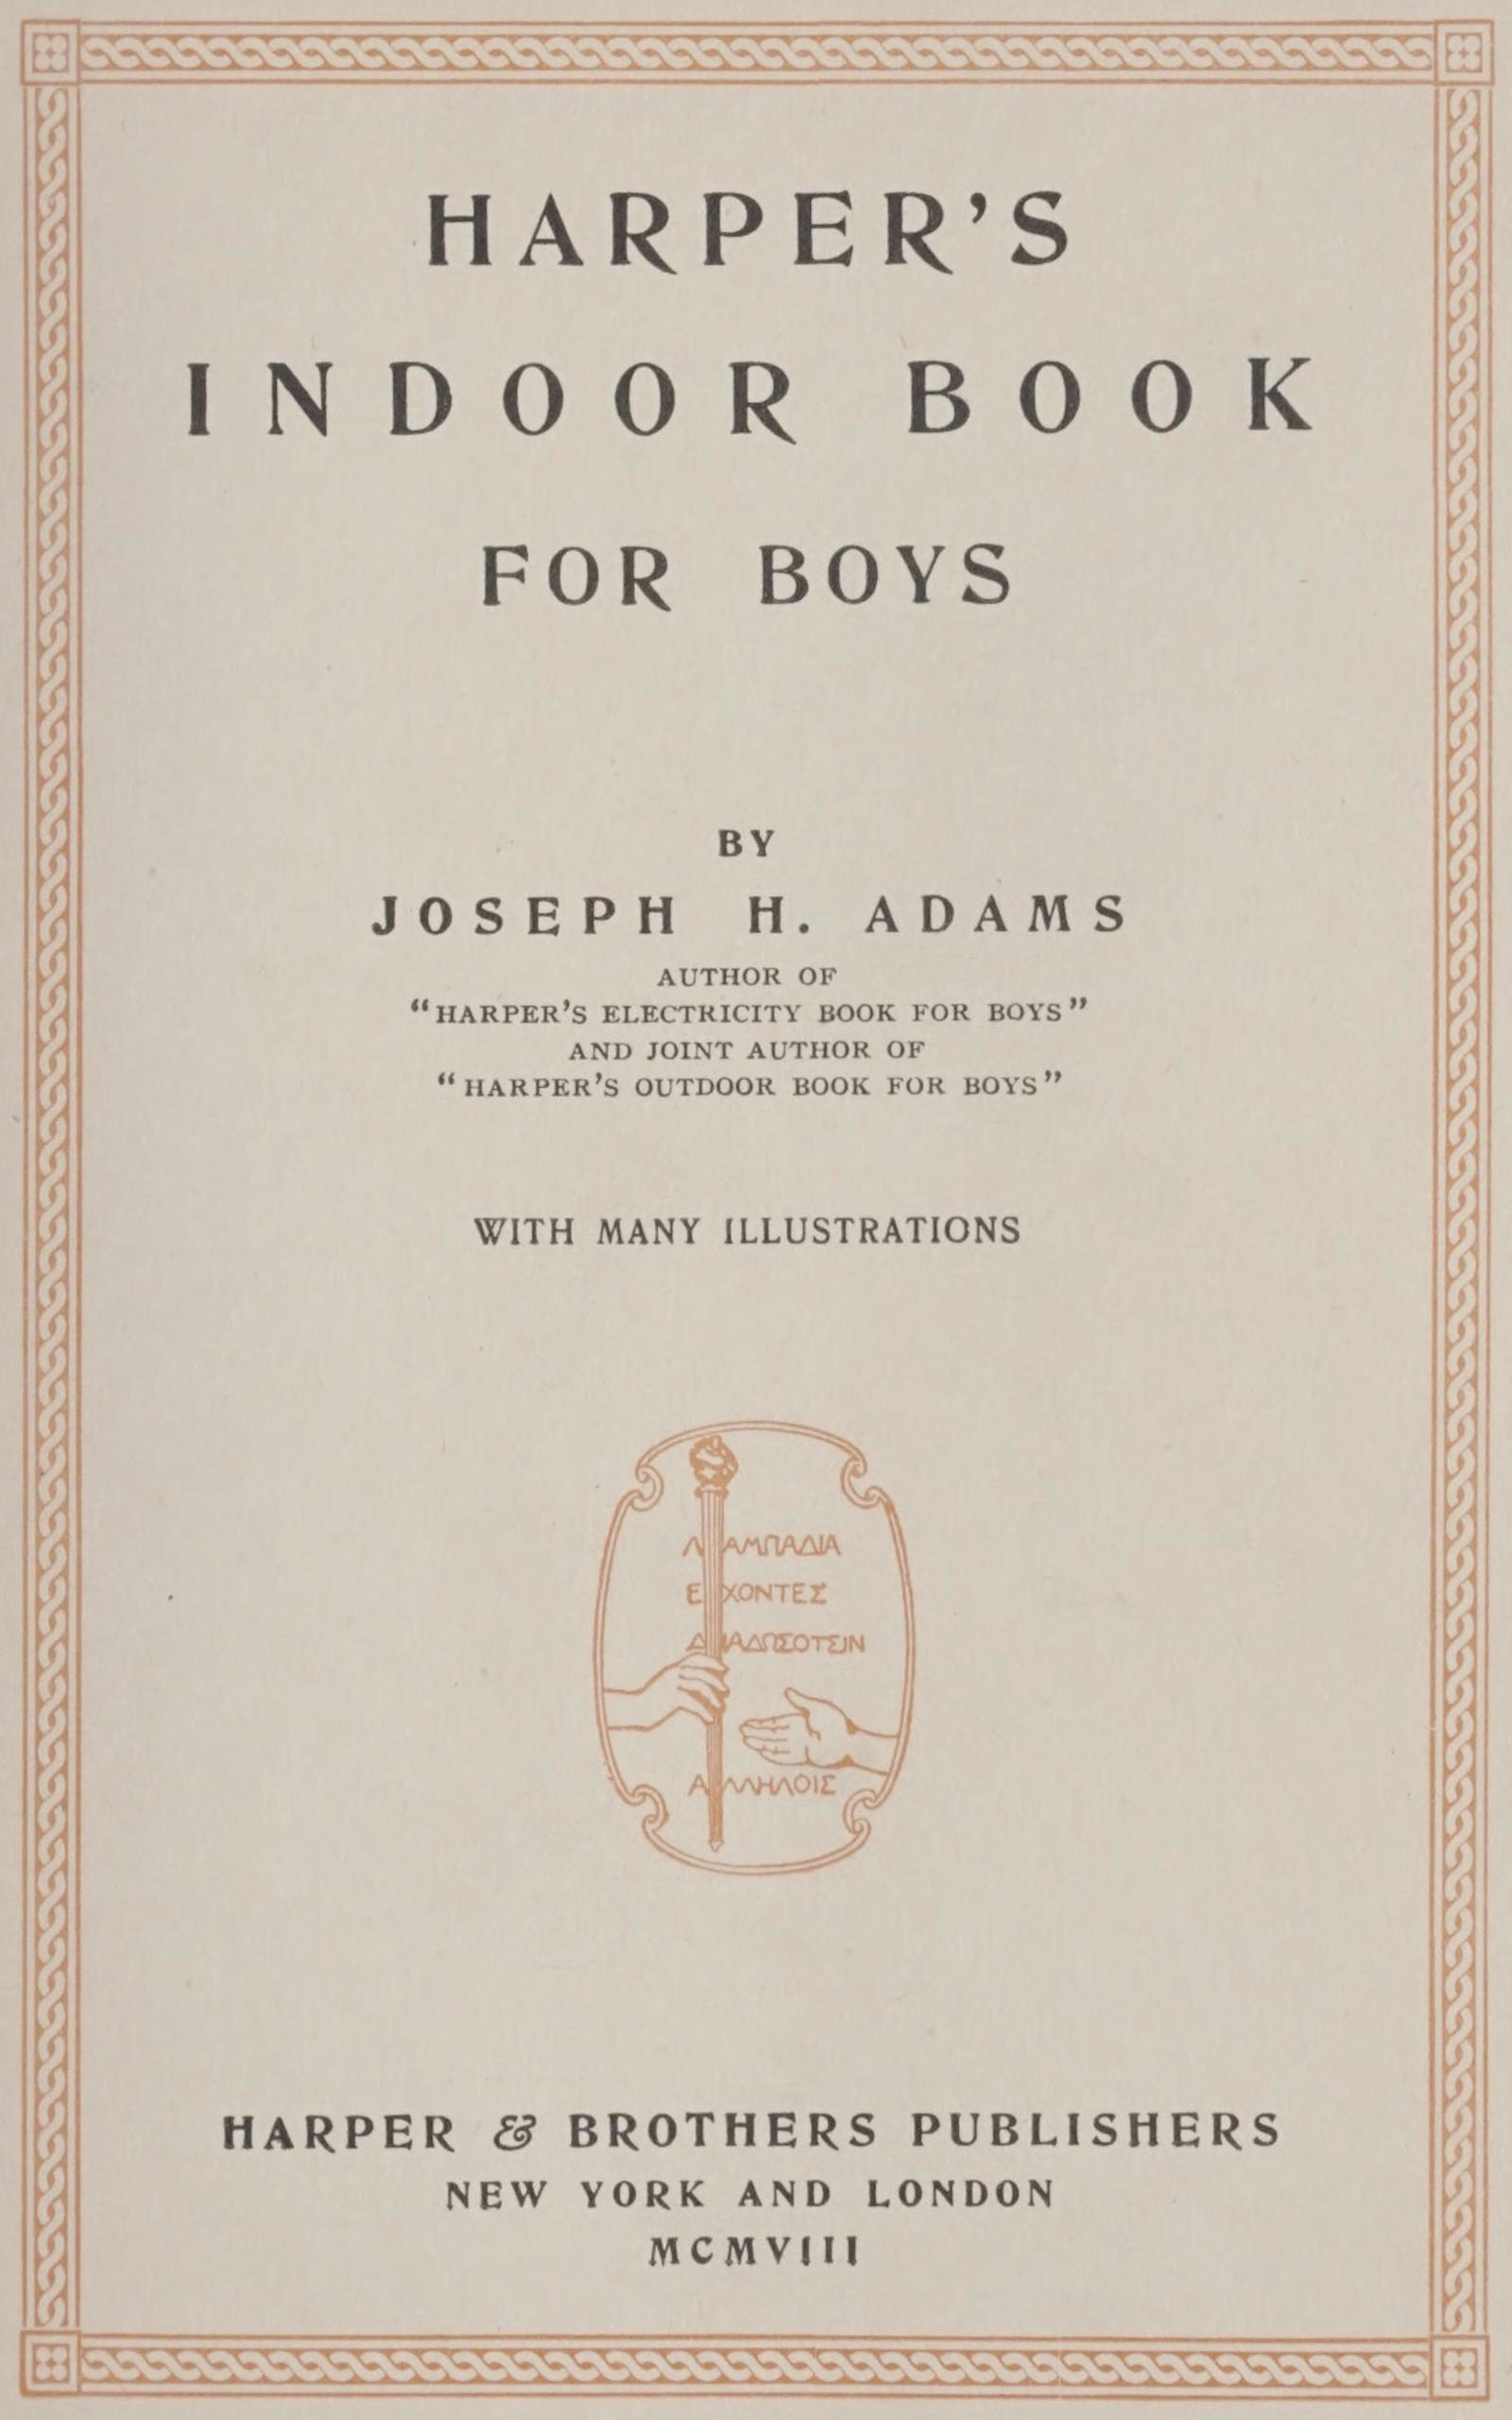 Harper's indoor book for boys